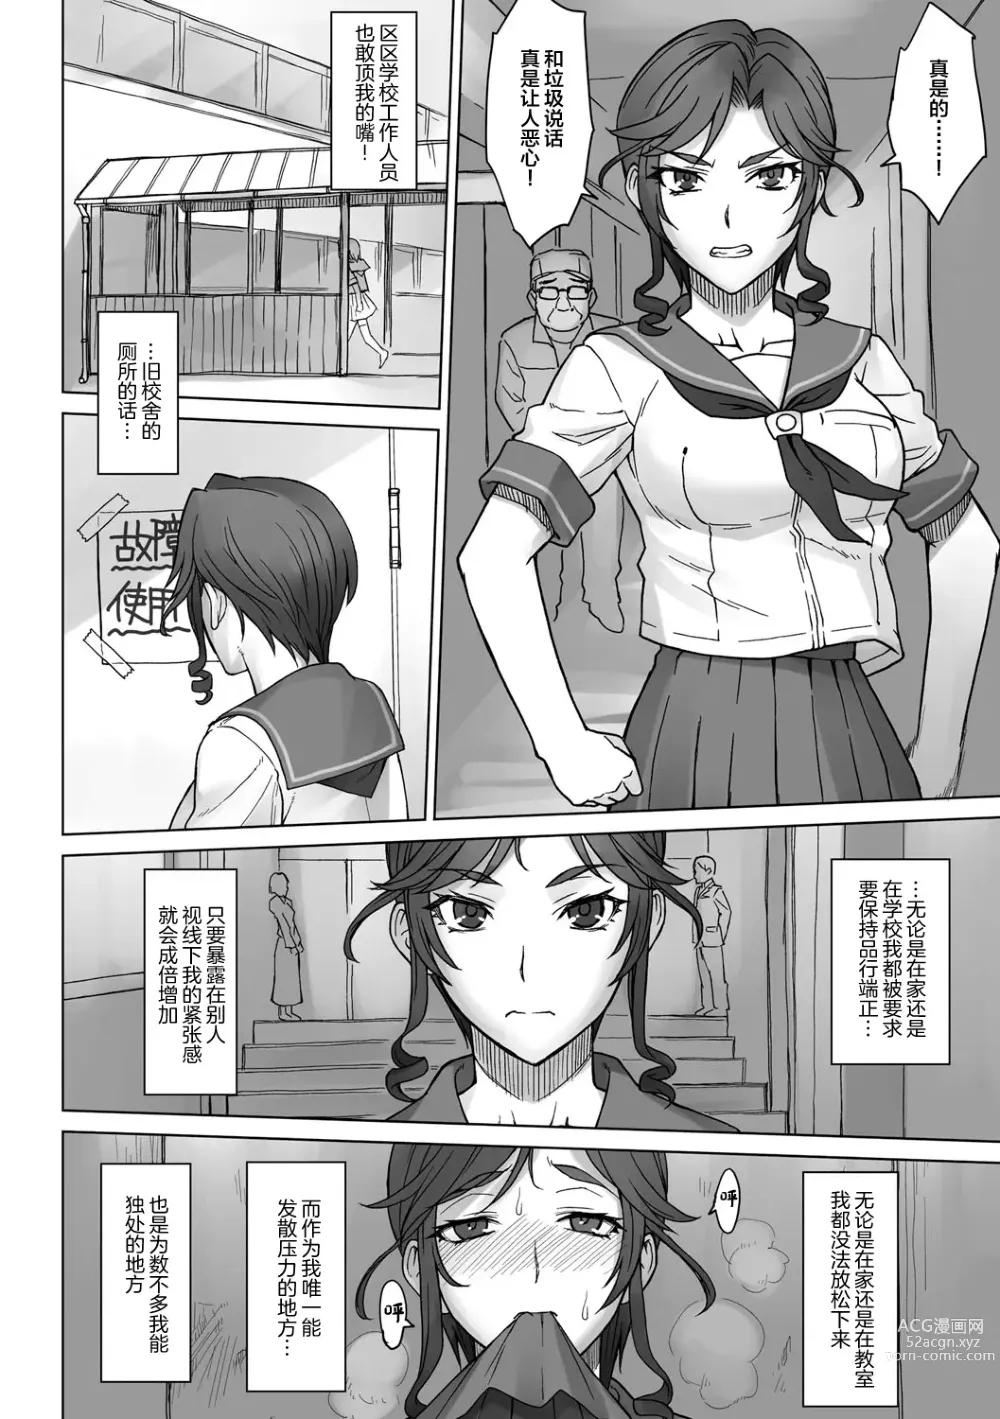 Page 2 of doujinshi Ojou-sama Chiharu VS Dekachin Oji-san + Dekachin Oji-san after